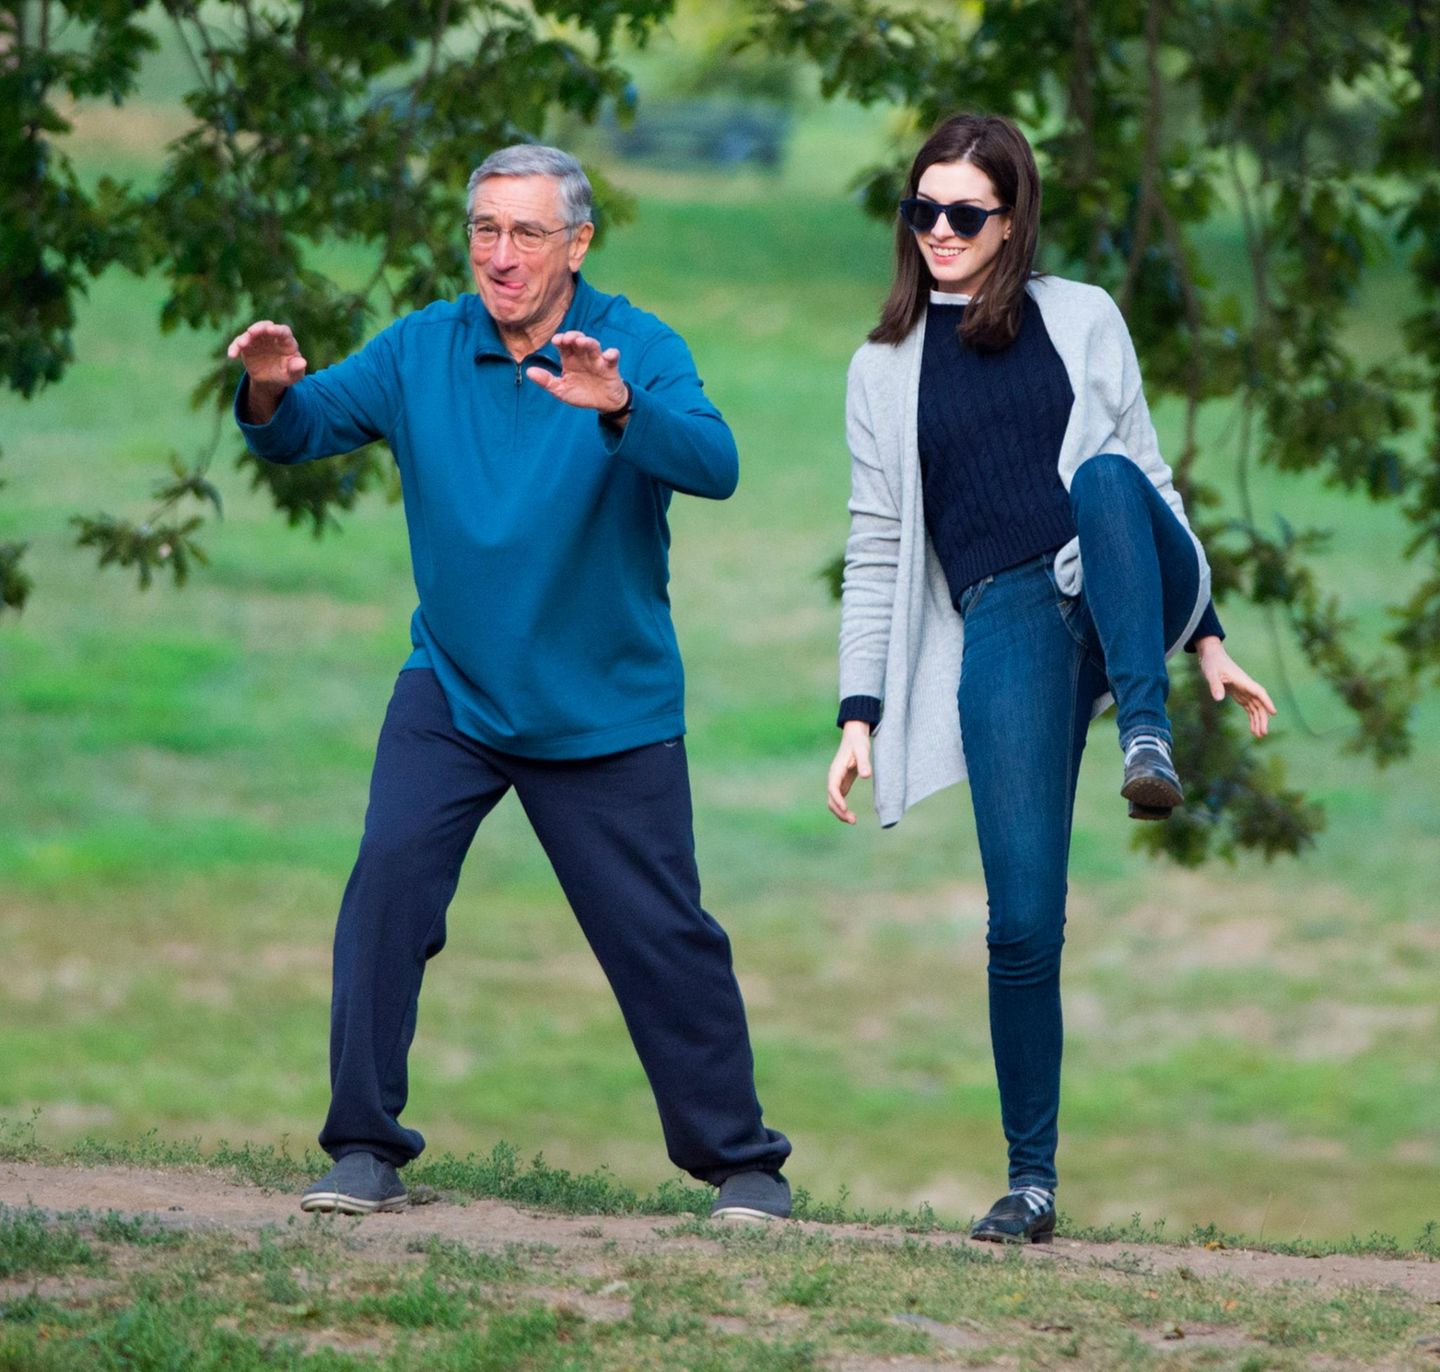 10. September 2014: Für eine Szene des Films "The Intern" machen Robert NeDiro und Anne Hathaway im Park Tai Chi.